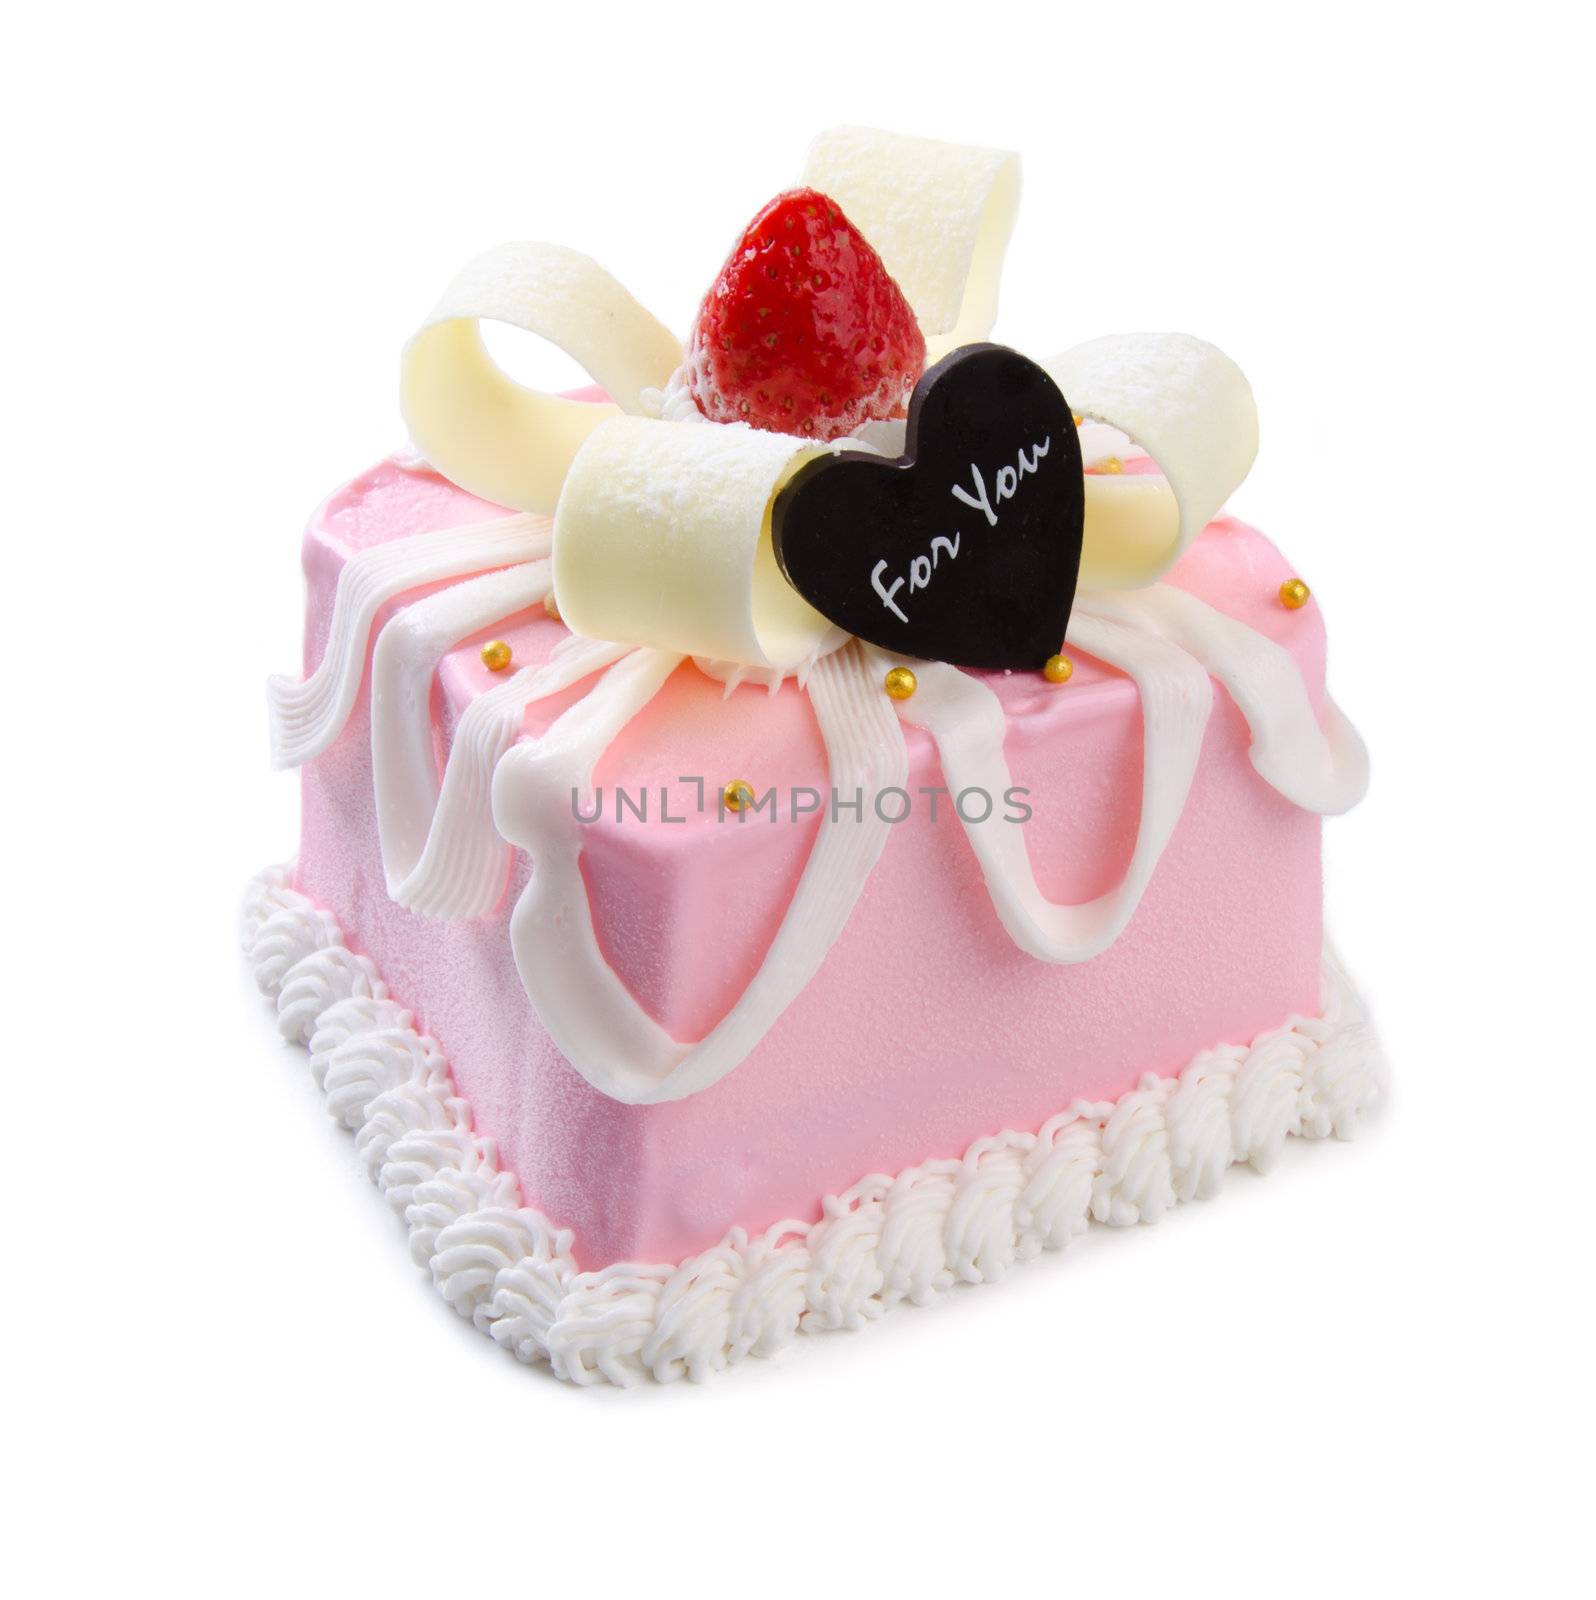 cake isolated on white background